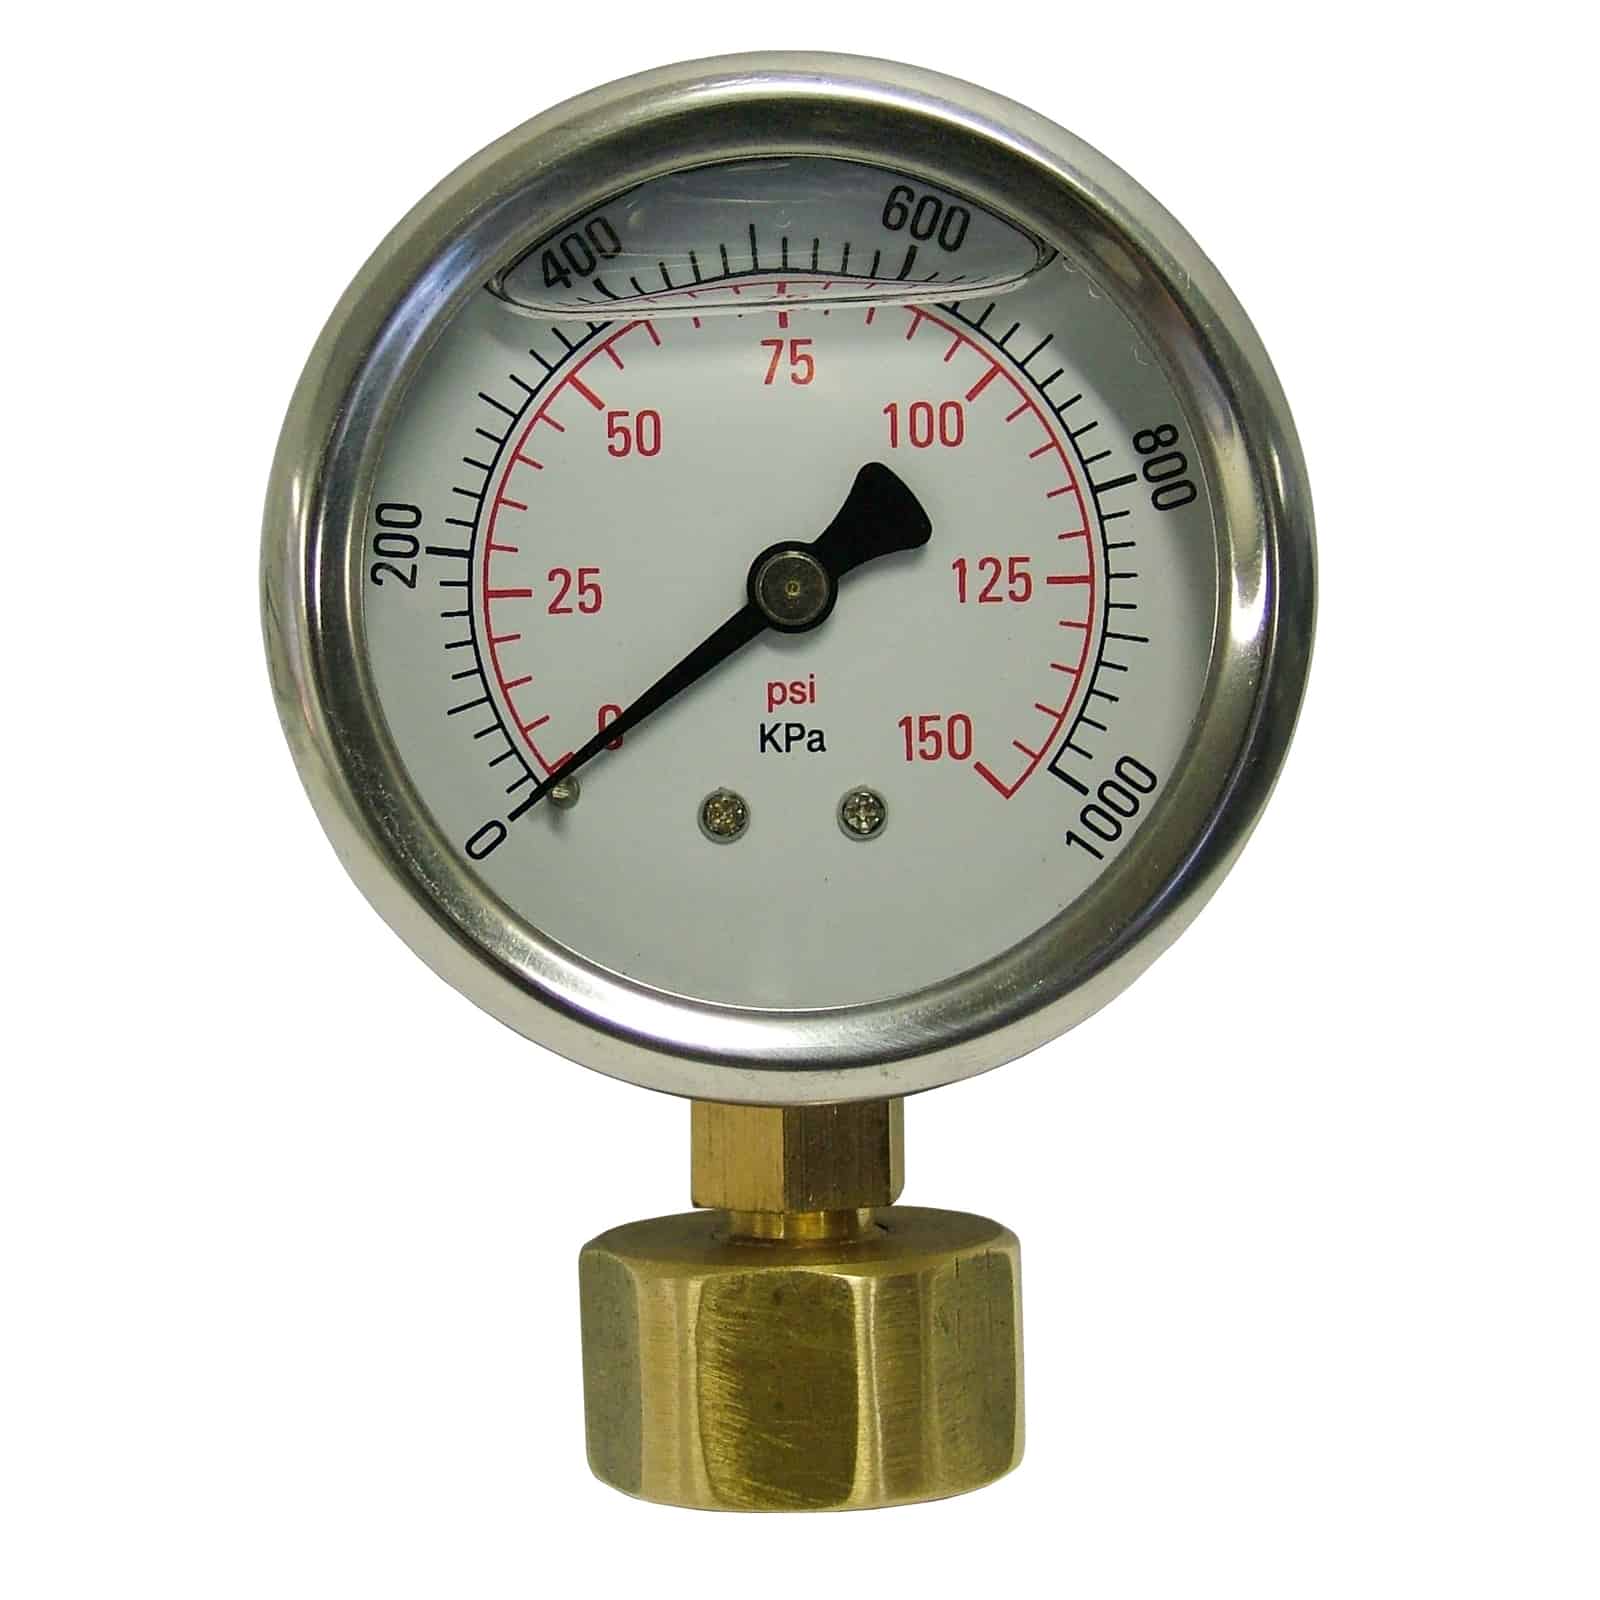 Купить манометр отопления. Pressure Gauge манометр. Манометр Gauge bi1725 118. Манометр 0-400 КПА для измерения давления водоснабжение промышленный. Манометр для измерения давления воды в водопроводе 1/2 резьба.